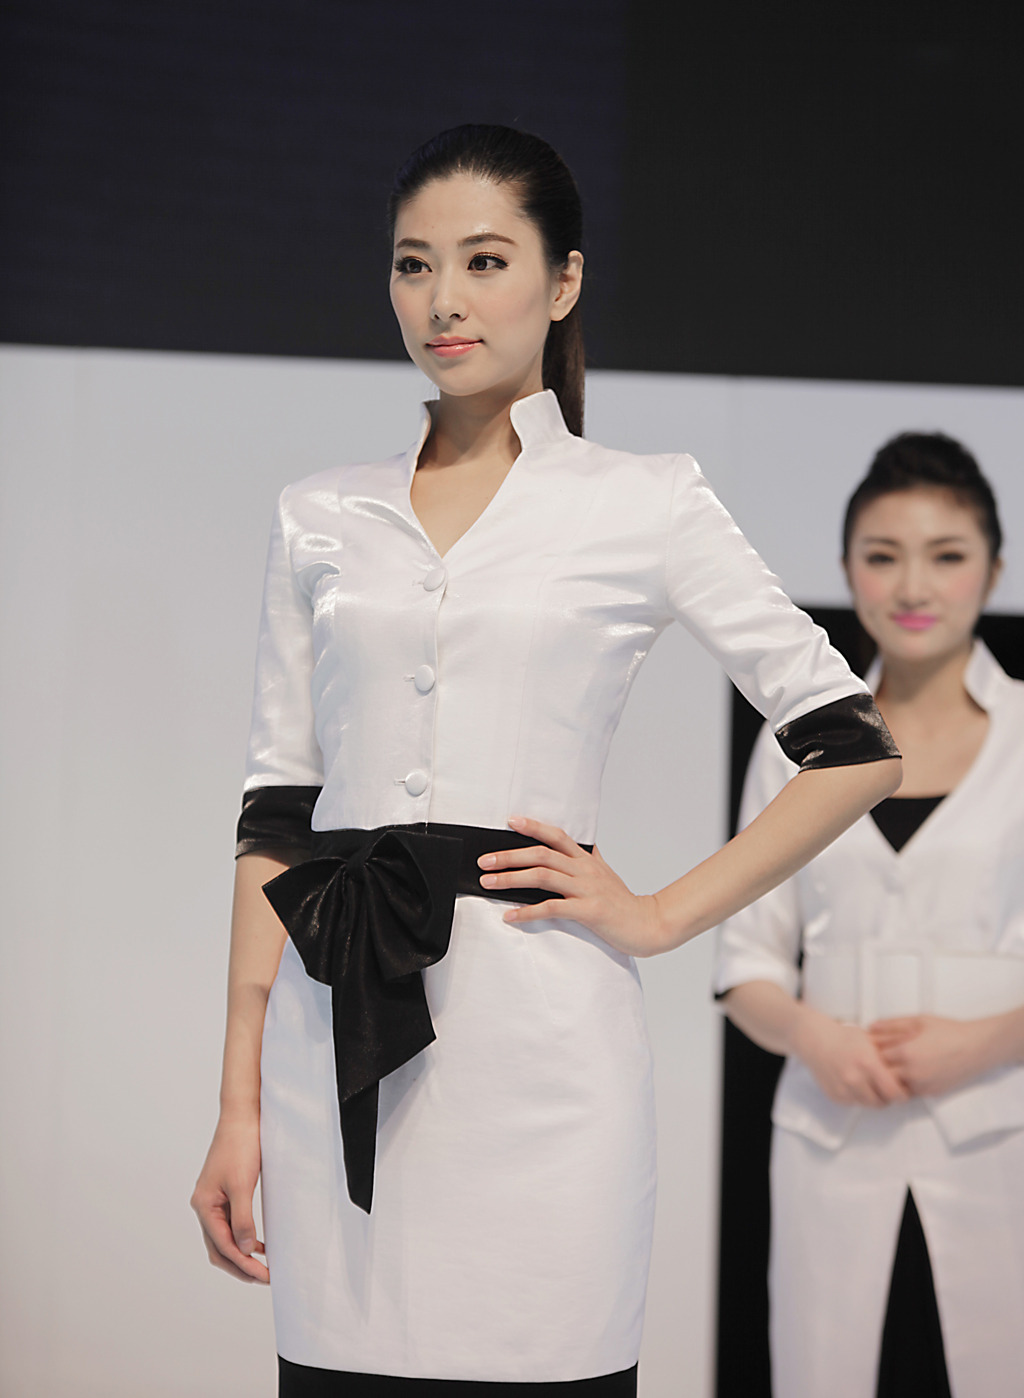 讴歌展台的白色制服模特